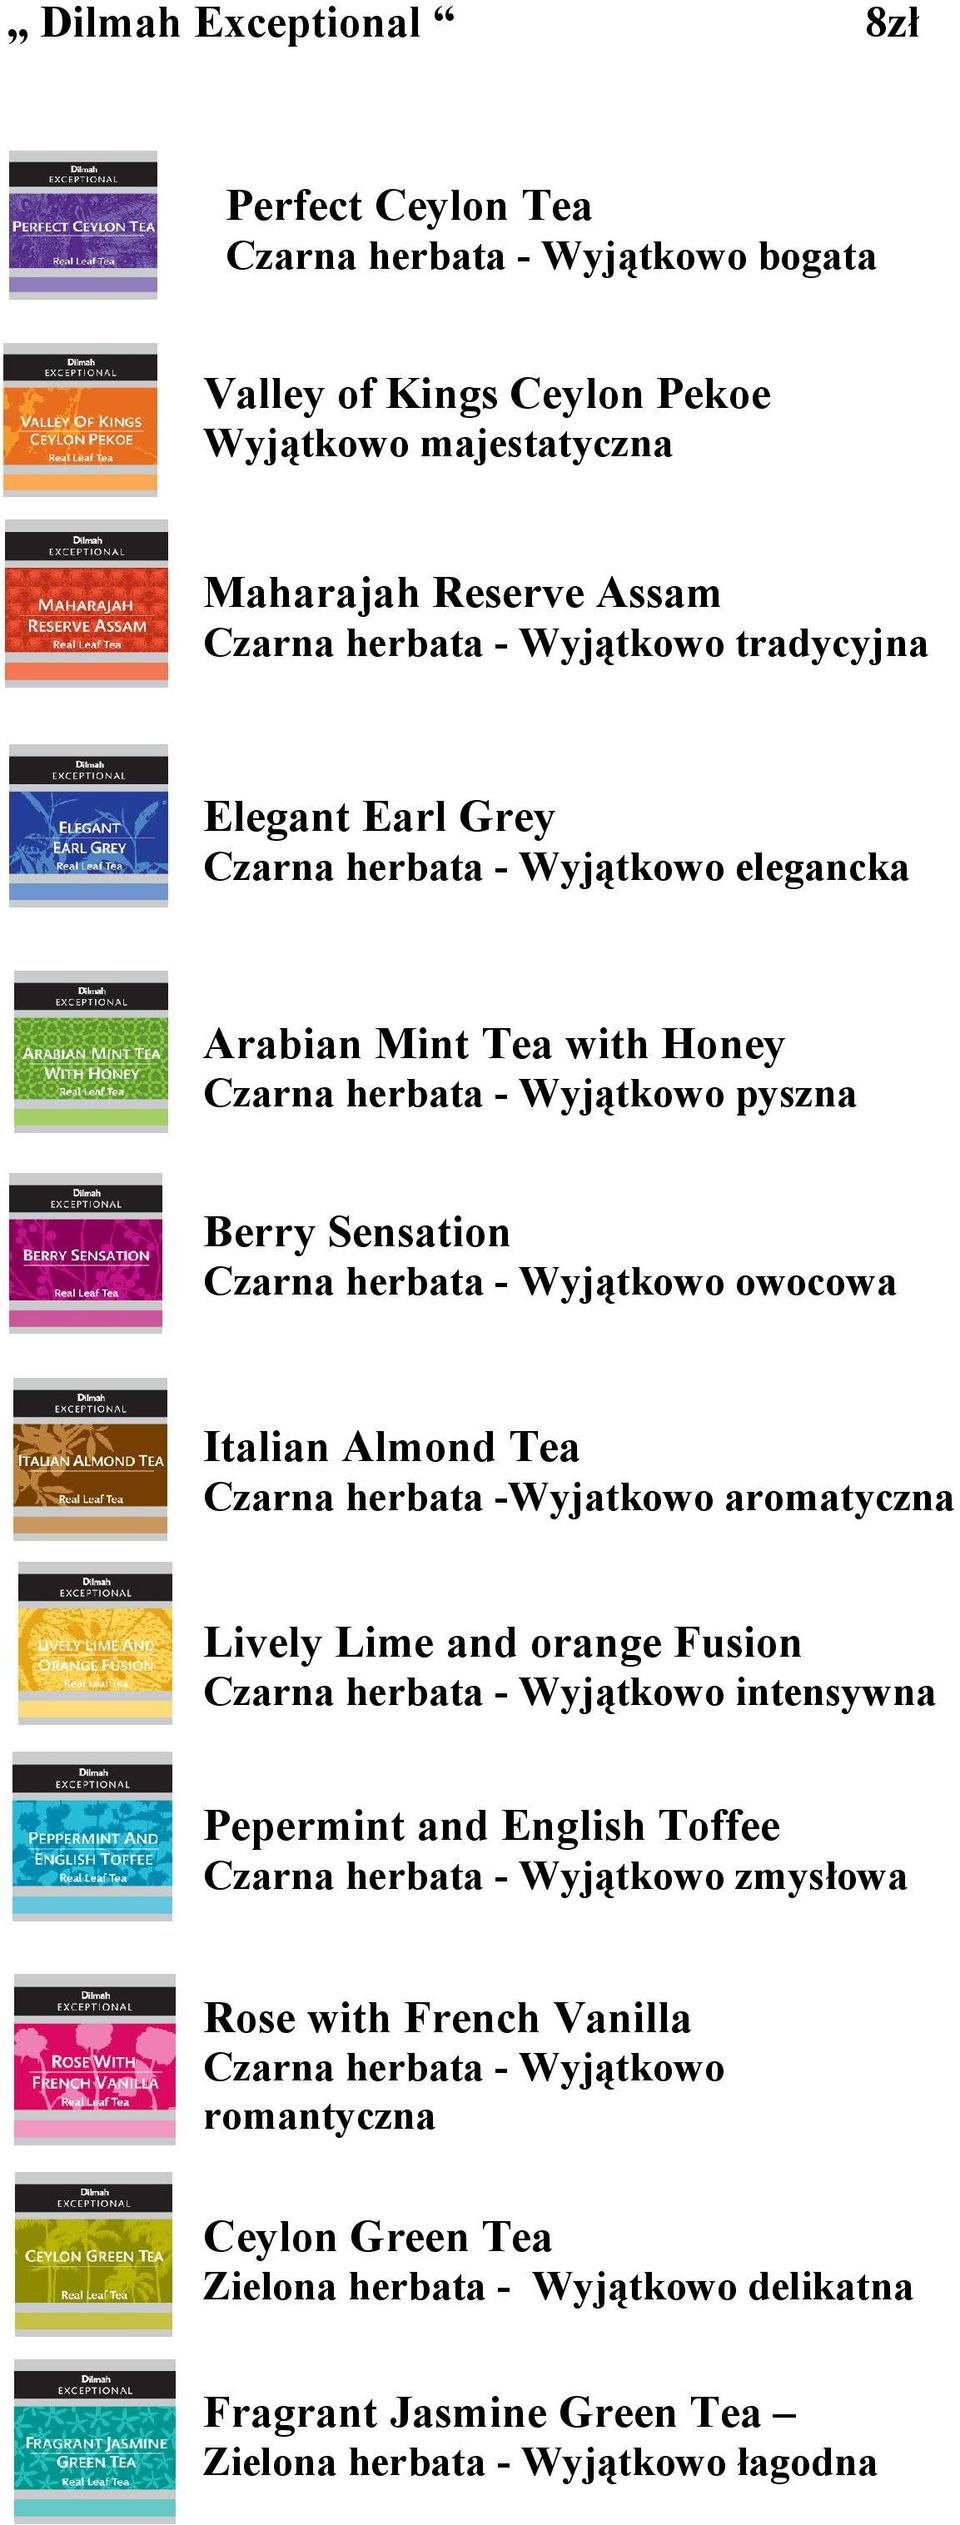 Italian Almond Tea Czarna herbata -Wyjatkowo aromatyczna Lively Lime and orange Fusion Czarna herbata - Wyjątkowo intensywna Pepermint and English Toffee Czarna herbata - Wyjątkowo